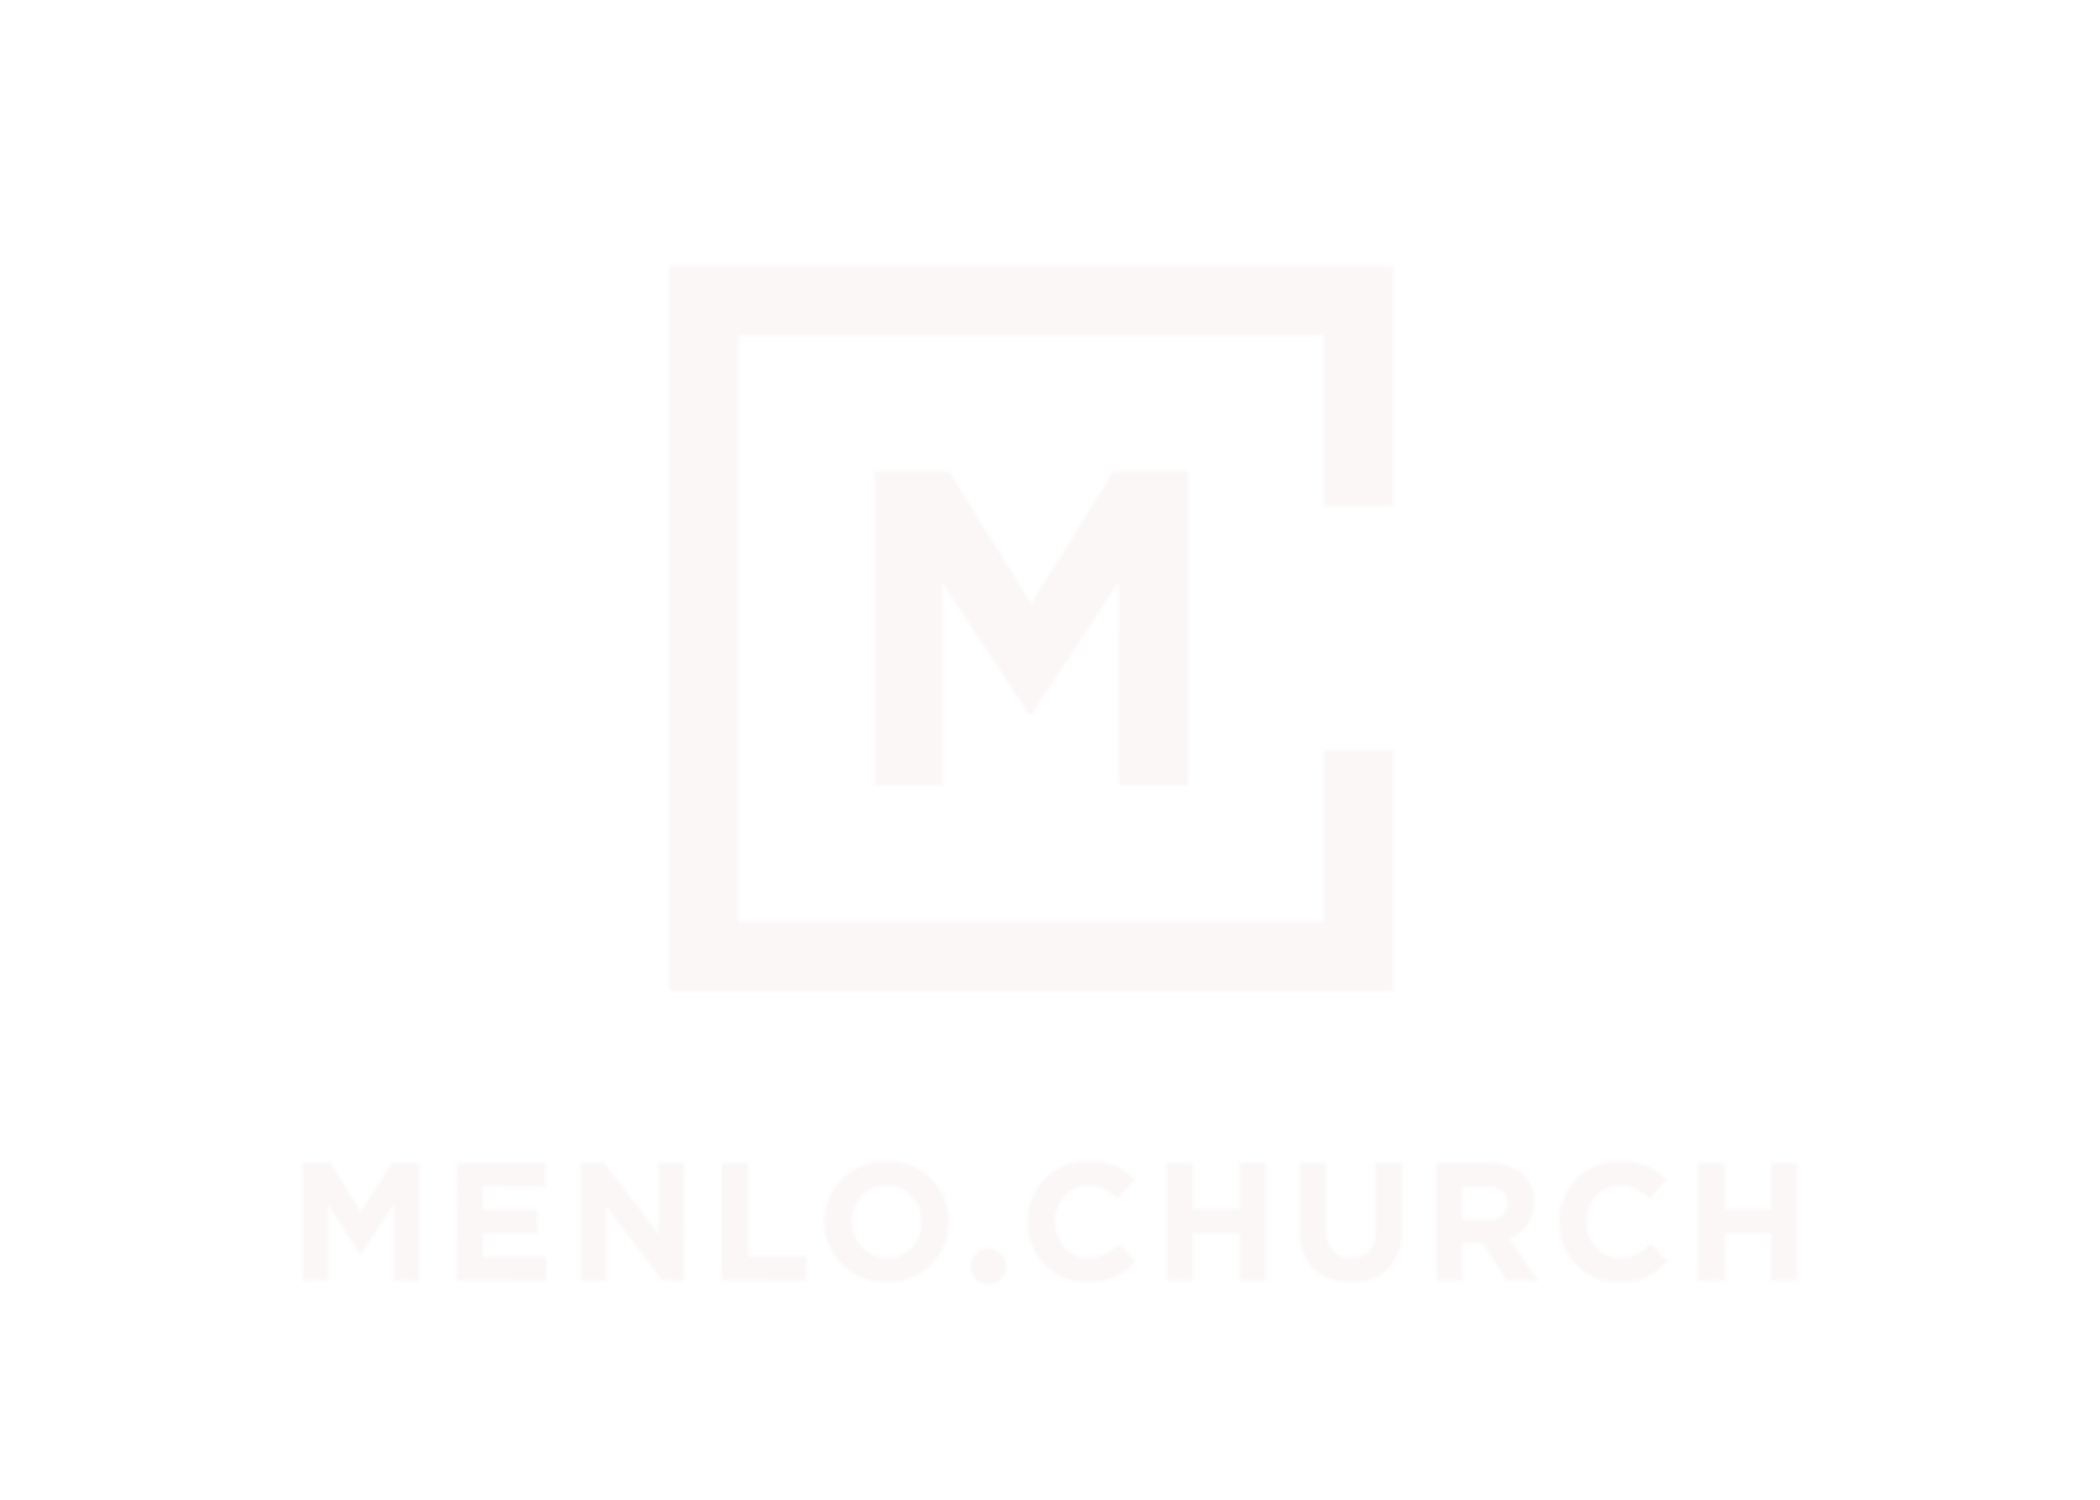 Menlo_reversed_logo_2